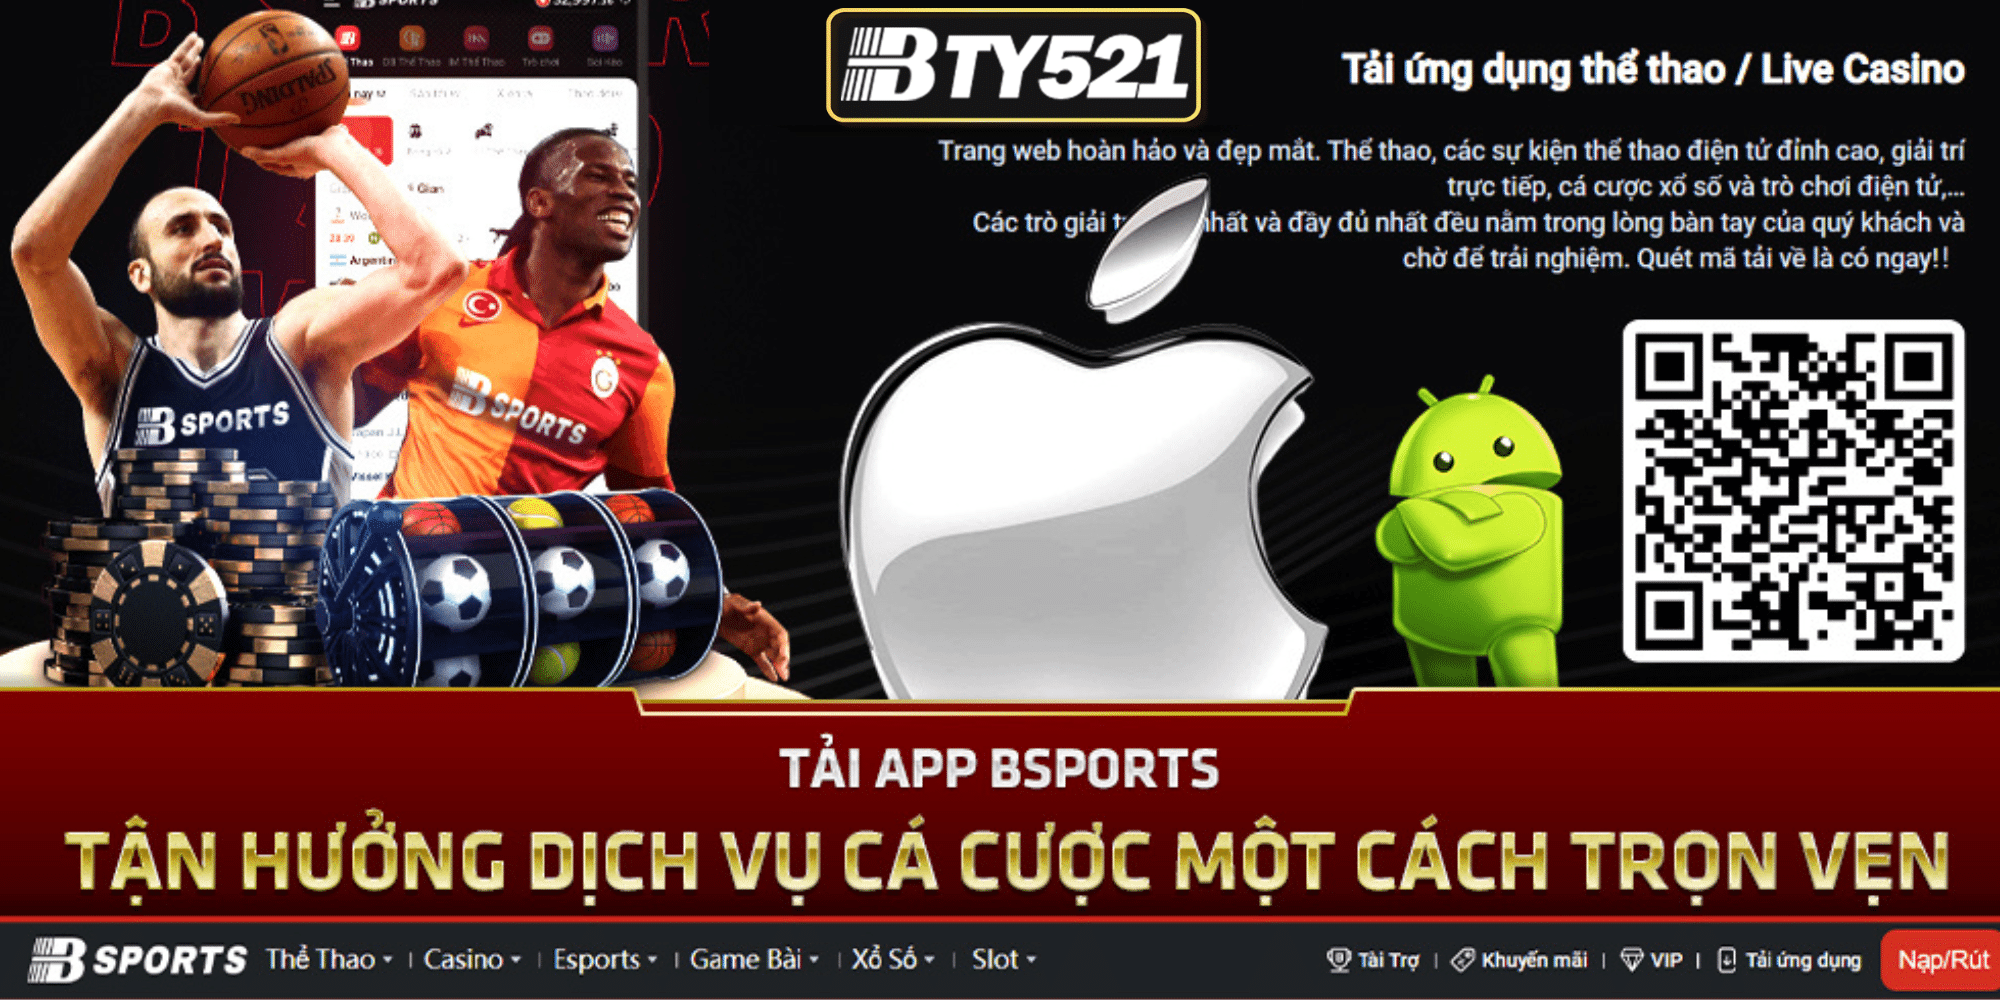 Tải App BTY521 Mới Nhất Trên Điện Thoại, Android, iOS